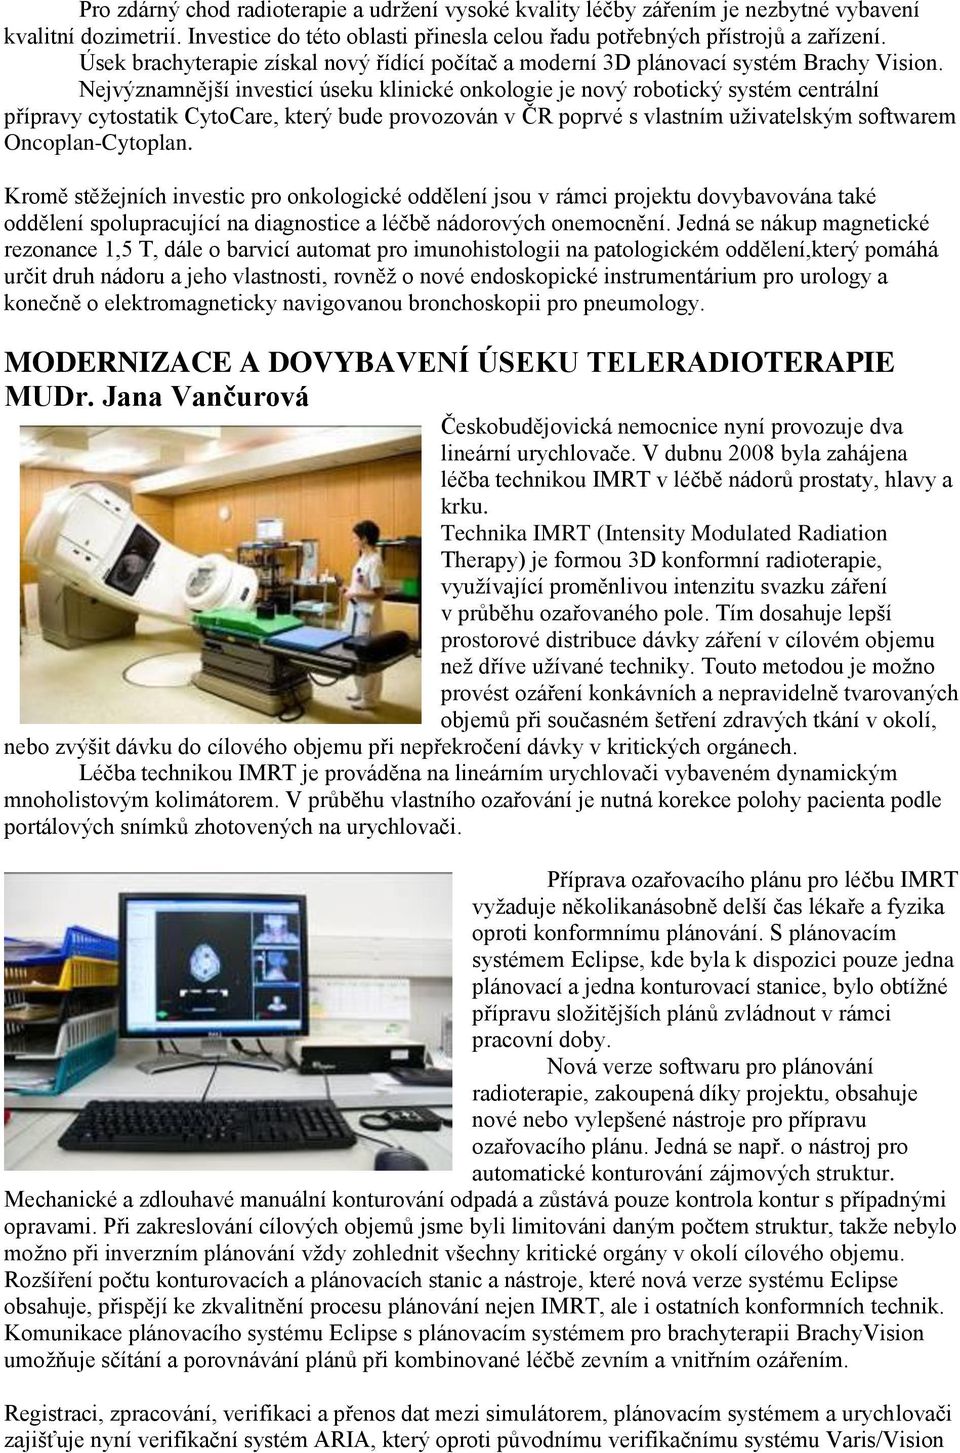 Nejvýznamnější investicí úseku klinické onkologie je nový robotický systém centrální přípravy cytostatik CytoCare, který bude provozován v ČR poprvé s vlastním uživatelským softwarem